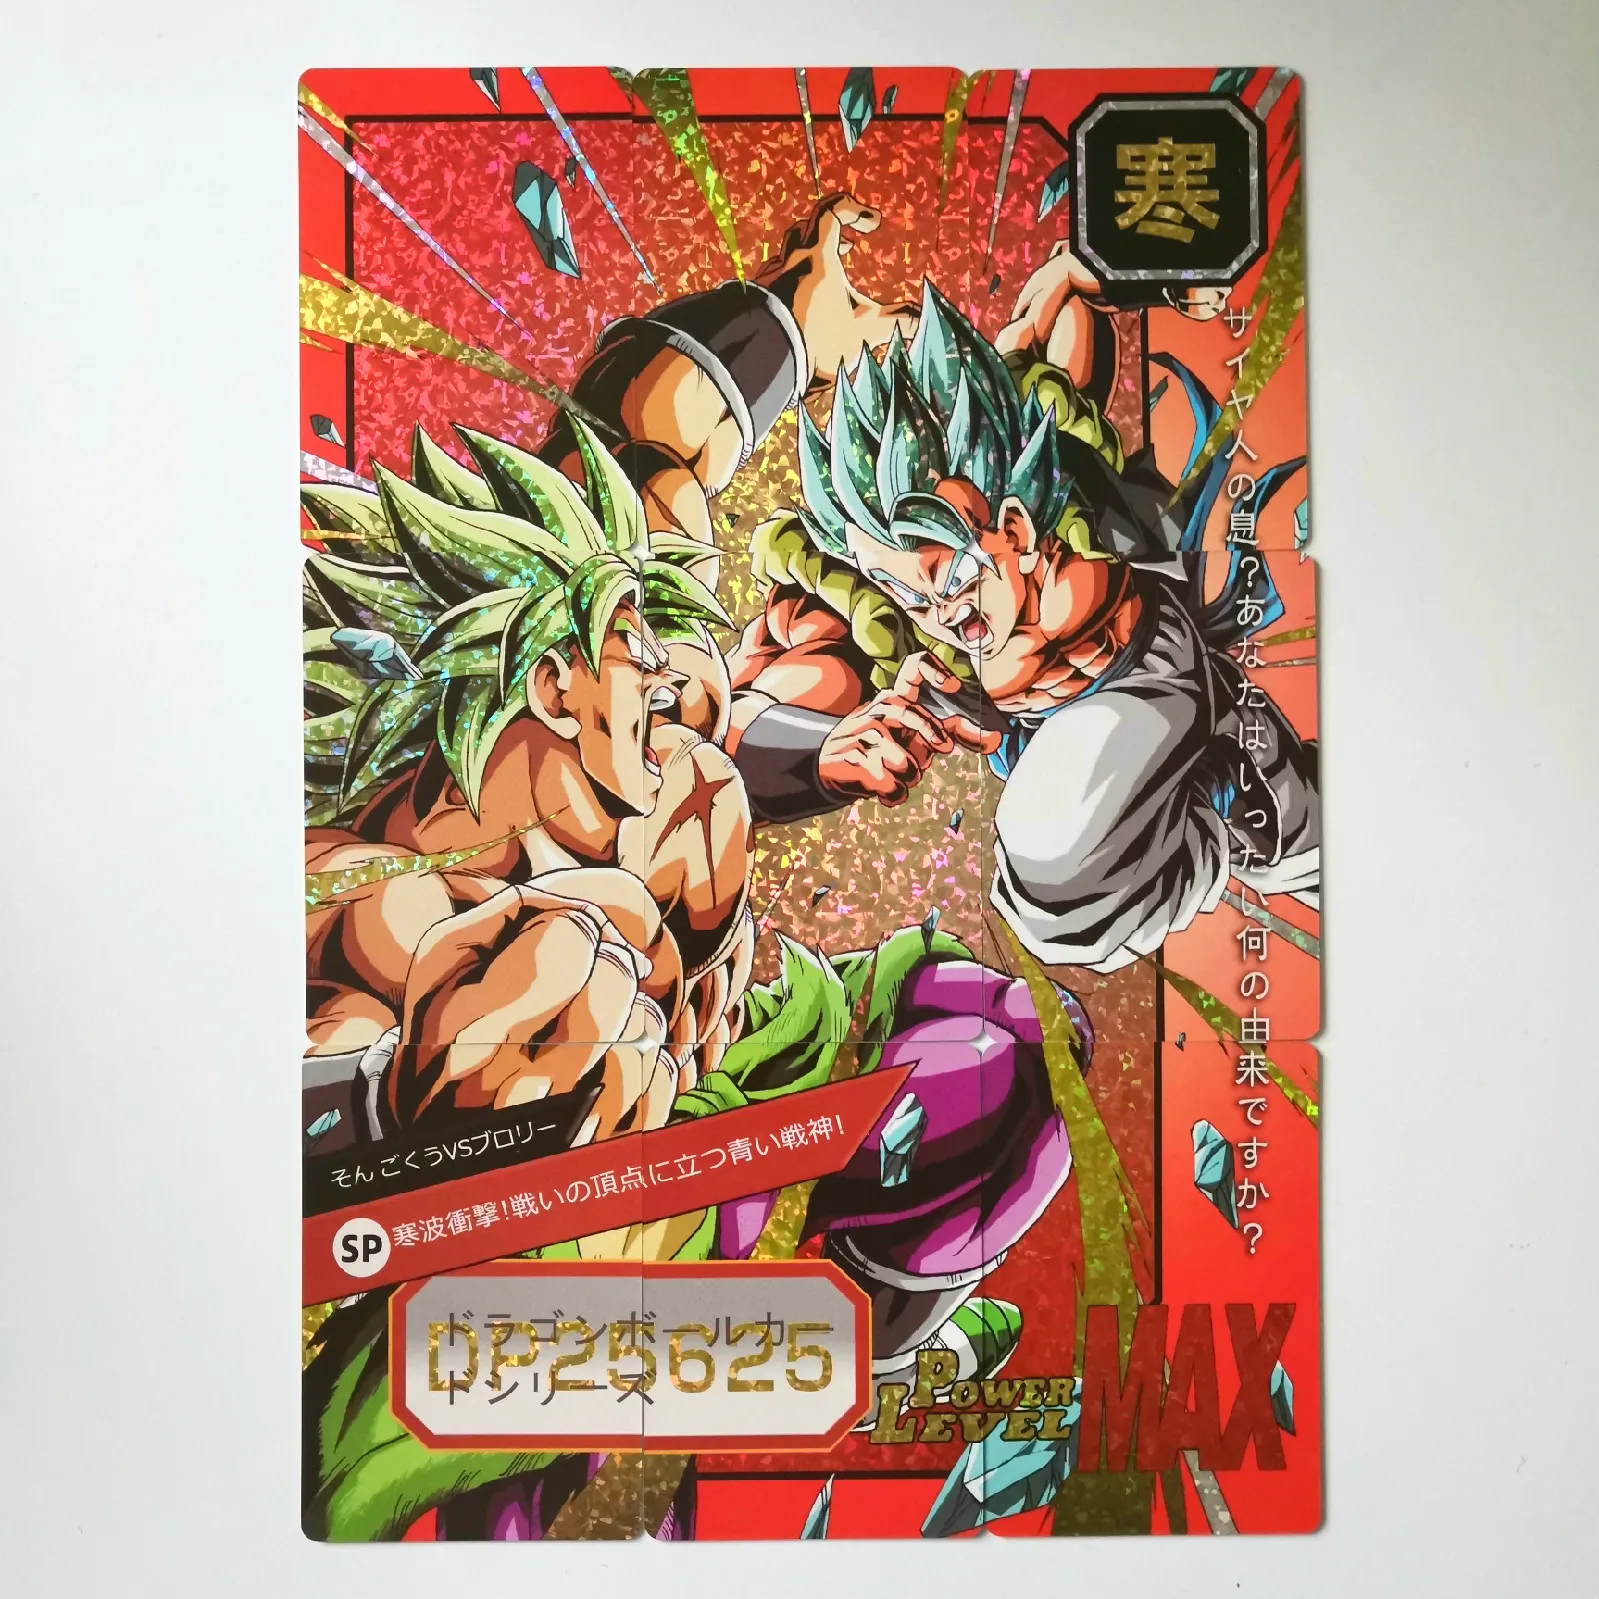 54 шт. супер Dragon Ball-Z 6 комплектов 9 в 1 герои битва карты Ultra Instinct Гоку Вегета супер игровая коллекция карт